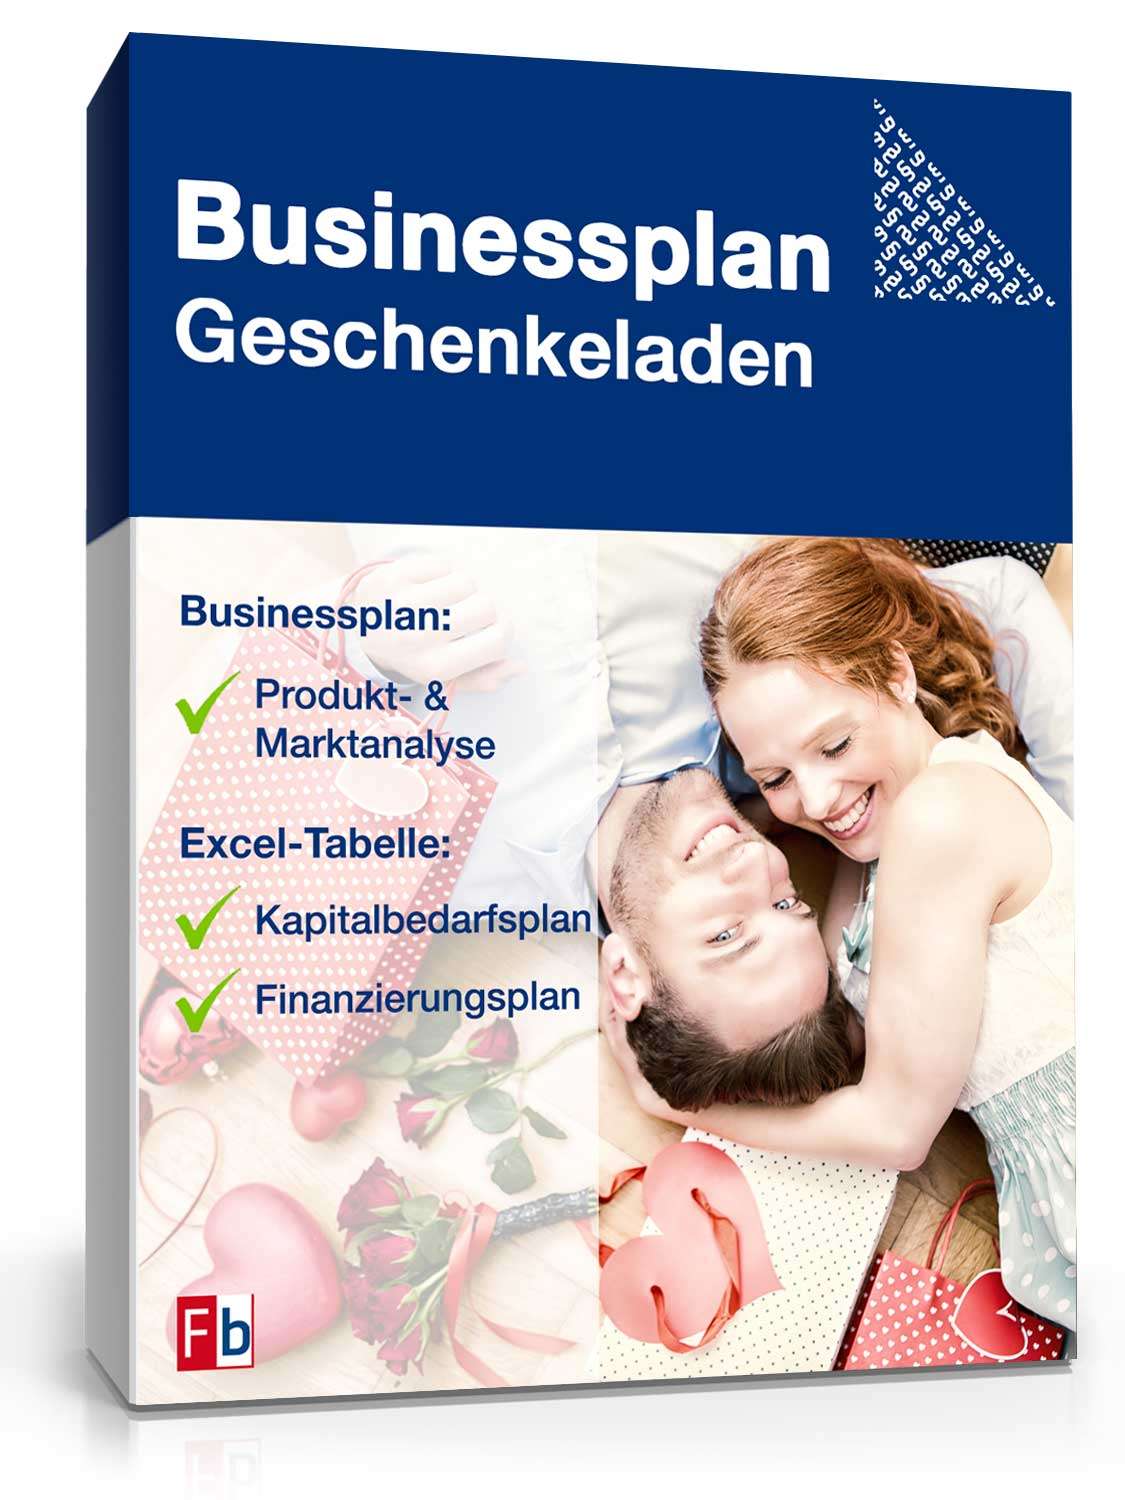 Hauptbild des Produkts: Businessplan Geschenkeladen